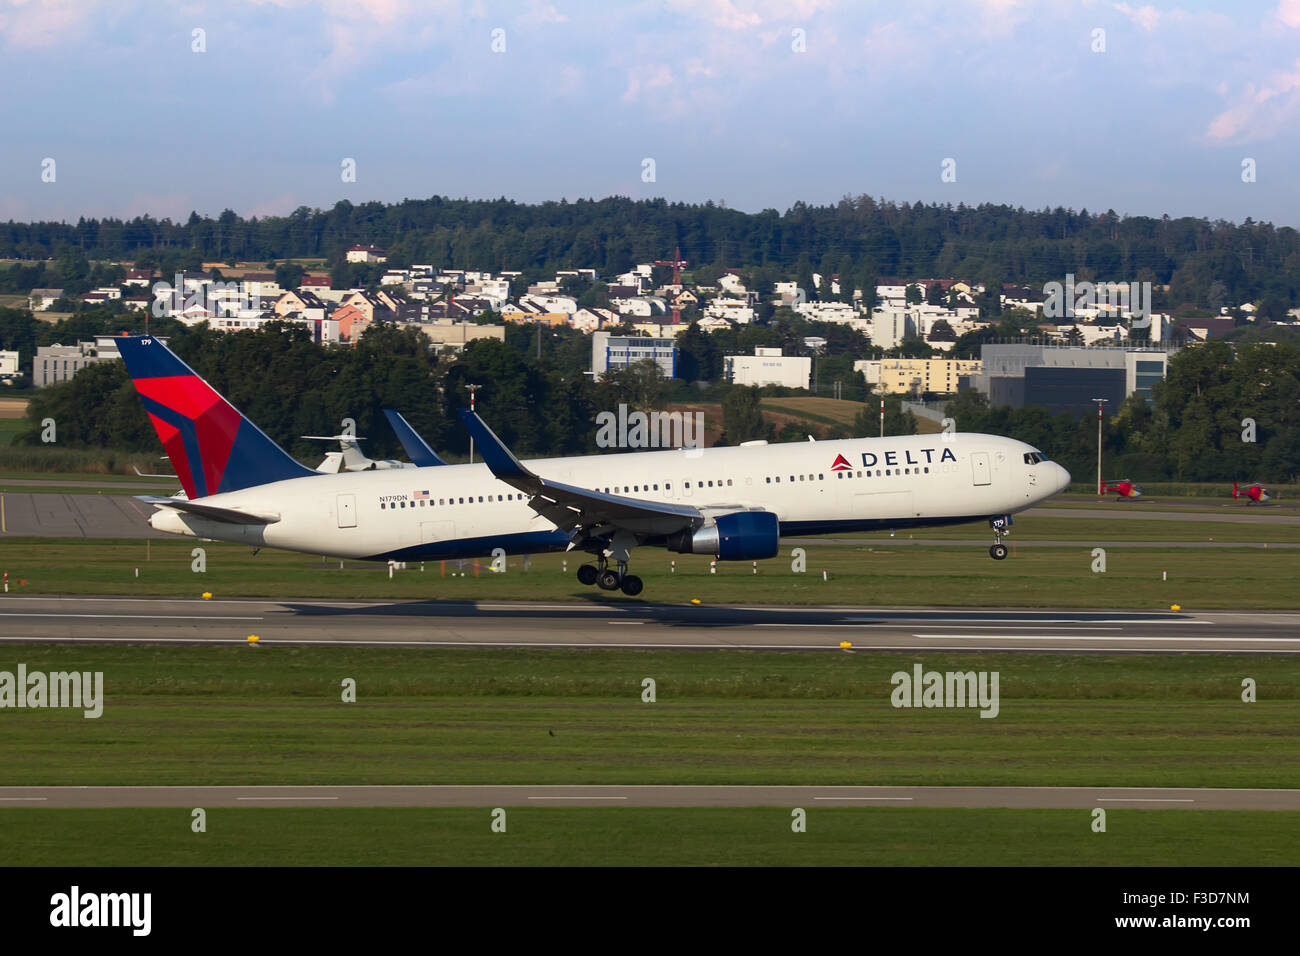 ZURICH - JULY 18: Boeing-757 Delta landing in Zurich after long haul flight on July 18, 2015 in Zurich, Switzerland. Zurich airp Stock Photo